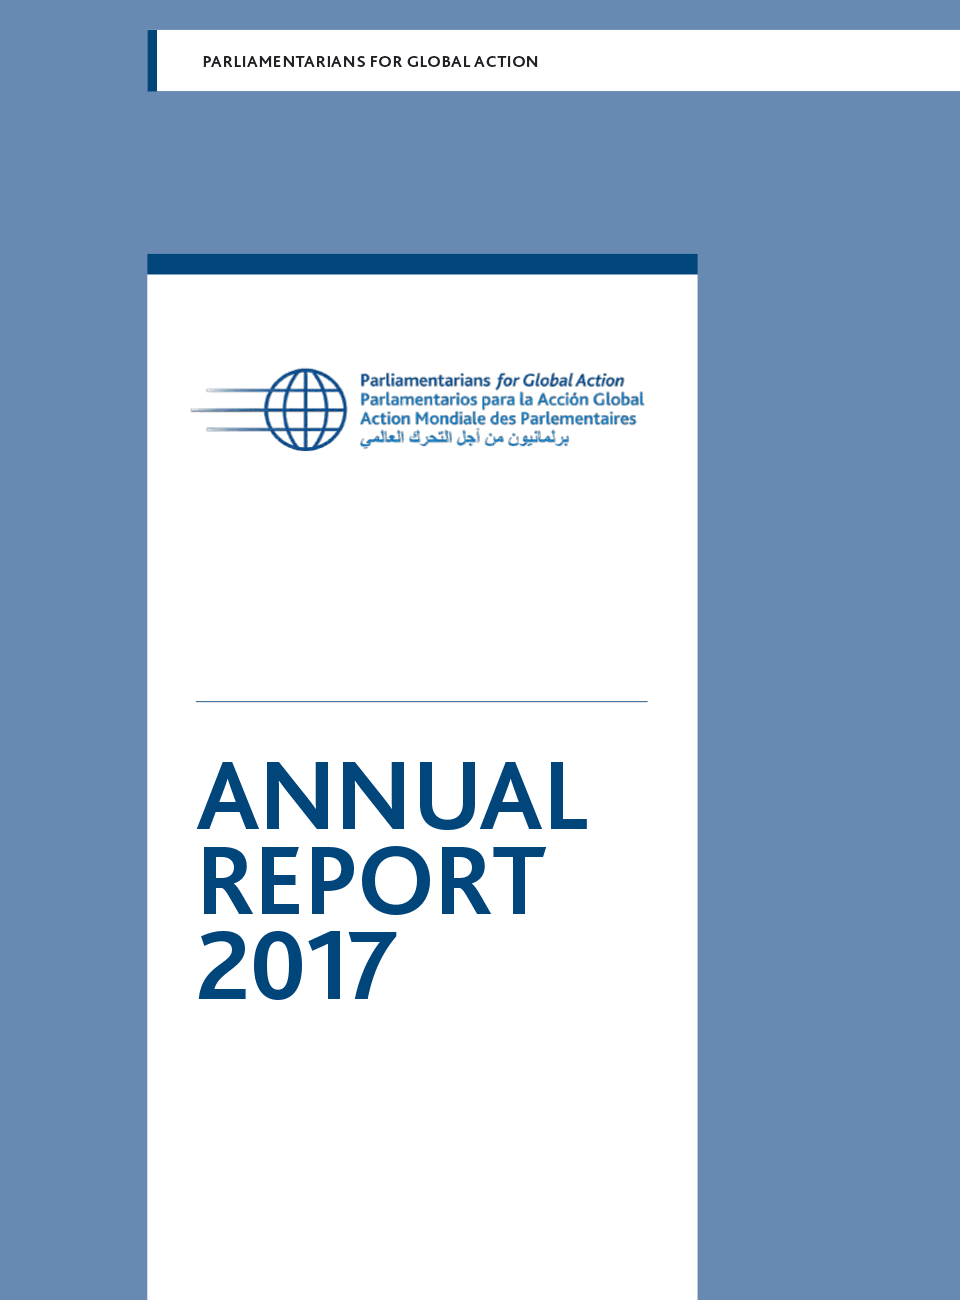 PGA Annual Report 2017